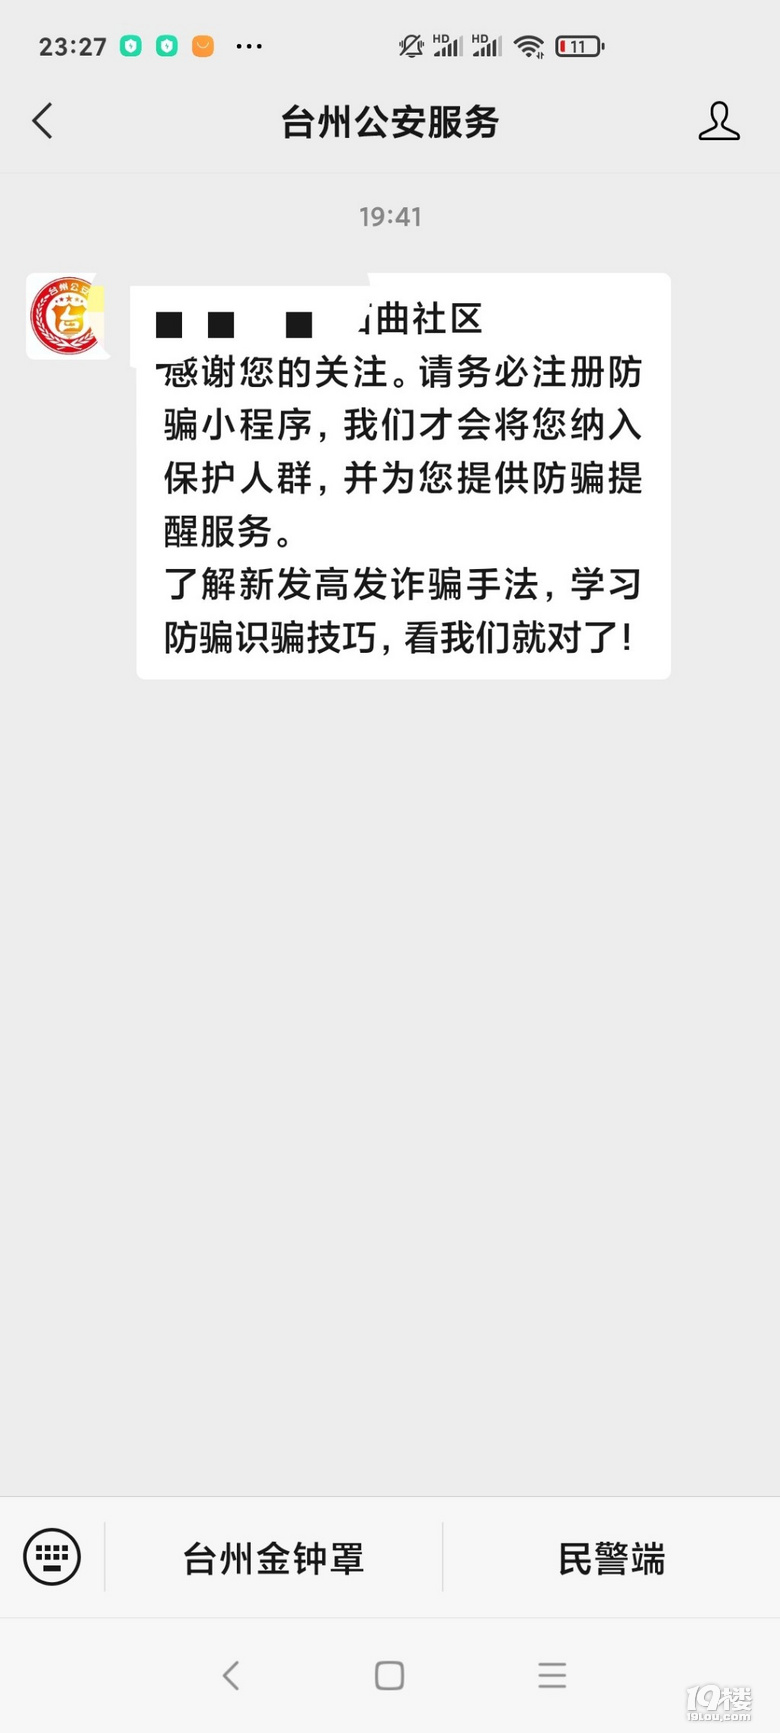 微信关注台州公安服务反诈骗电话提醒防电信诈骗